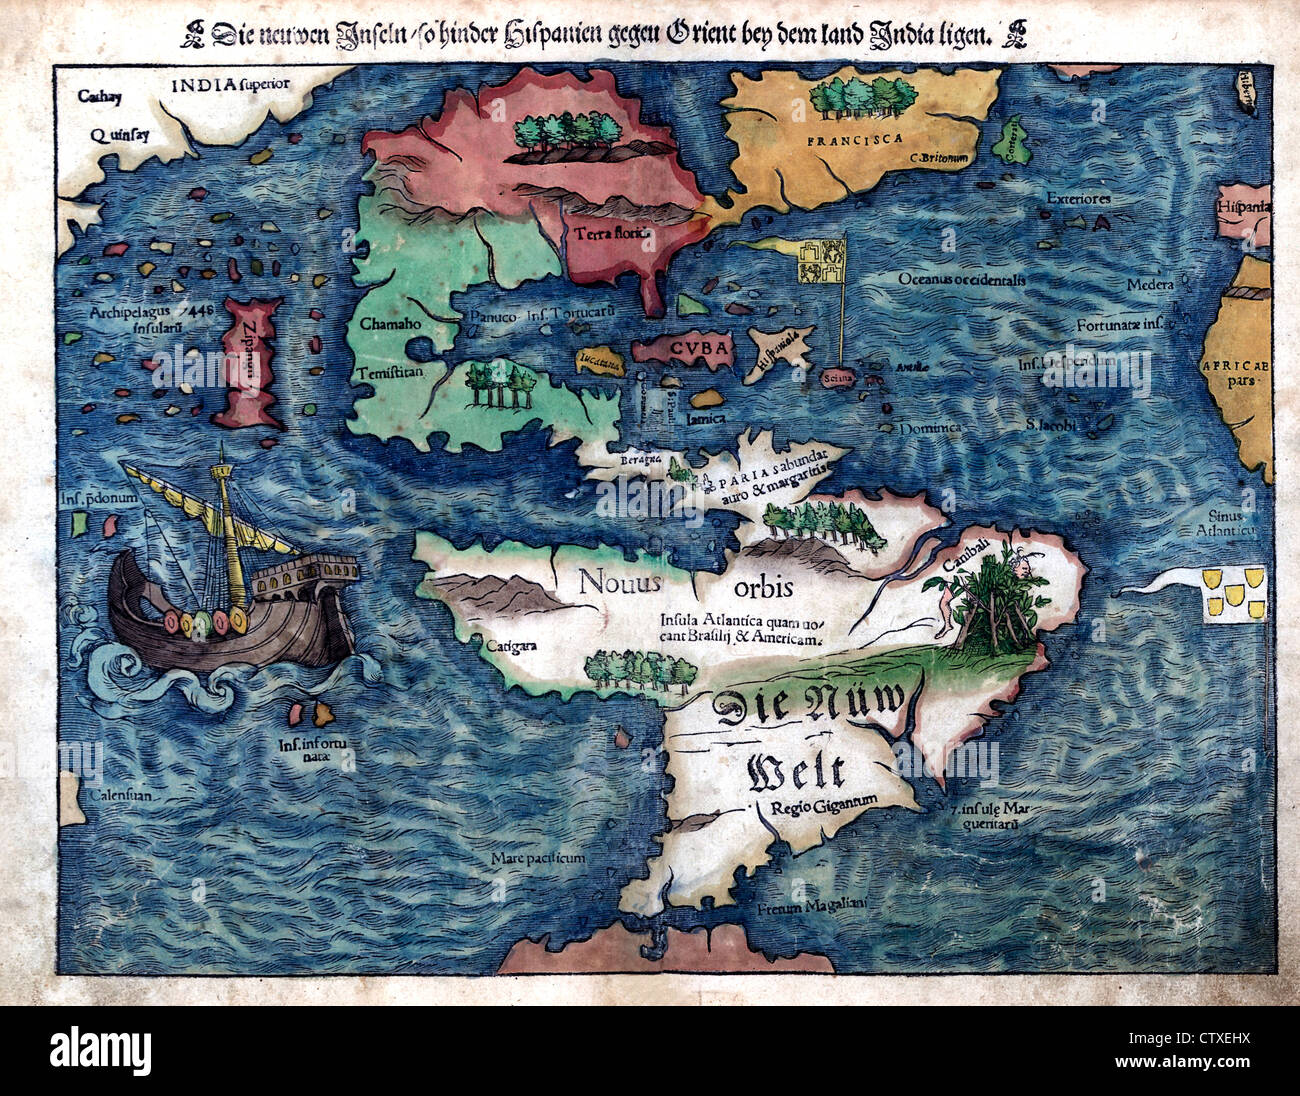 La carte du Nouveau Monde, vers 1550 - Die neuen 151, donc entraver Hispanien gegen dem bey Orient Inde terres ligen Banque D'Images